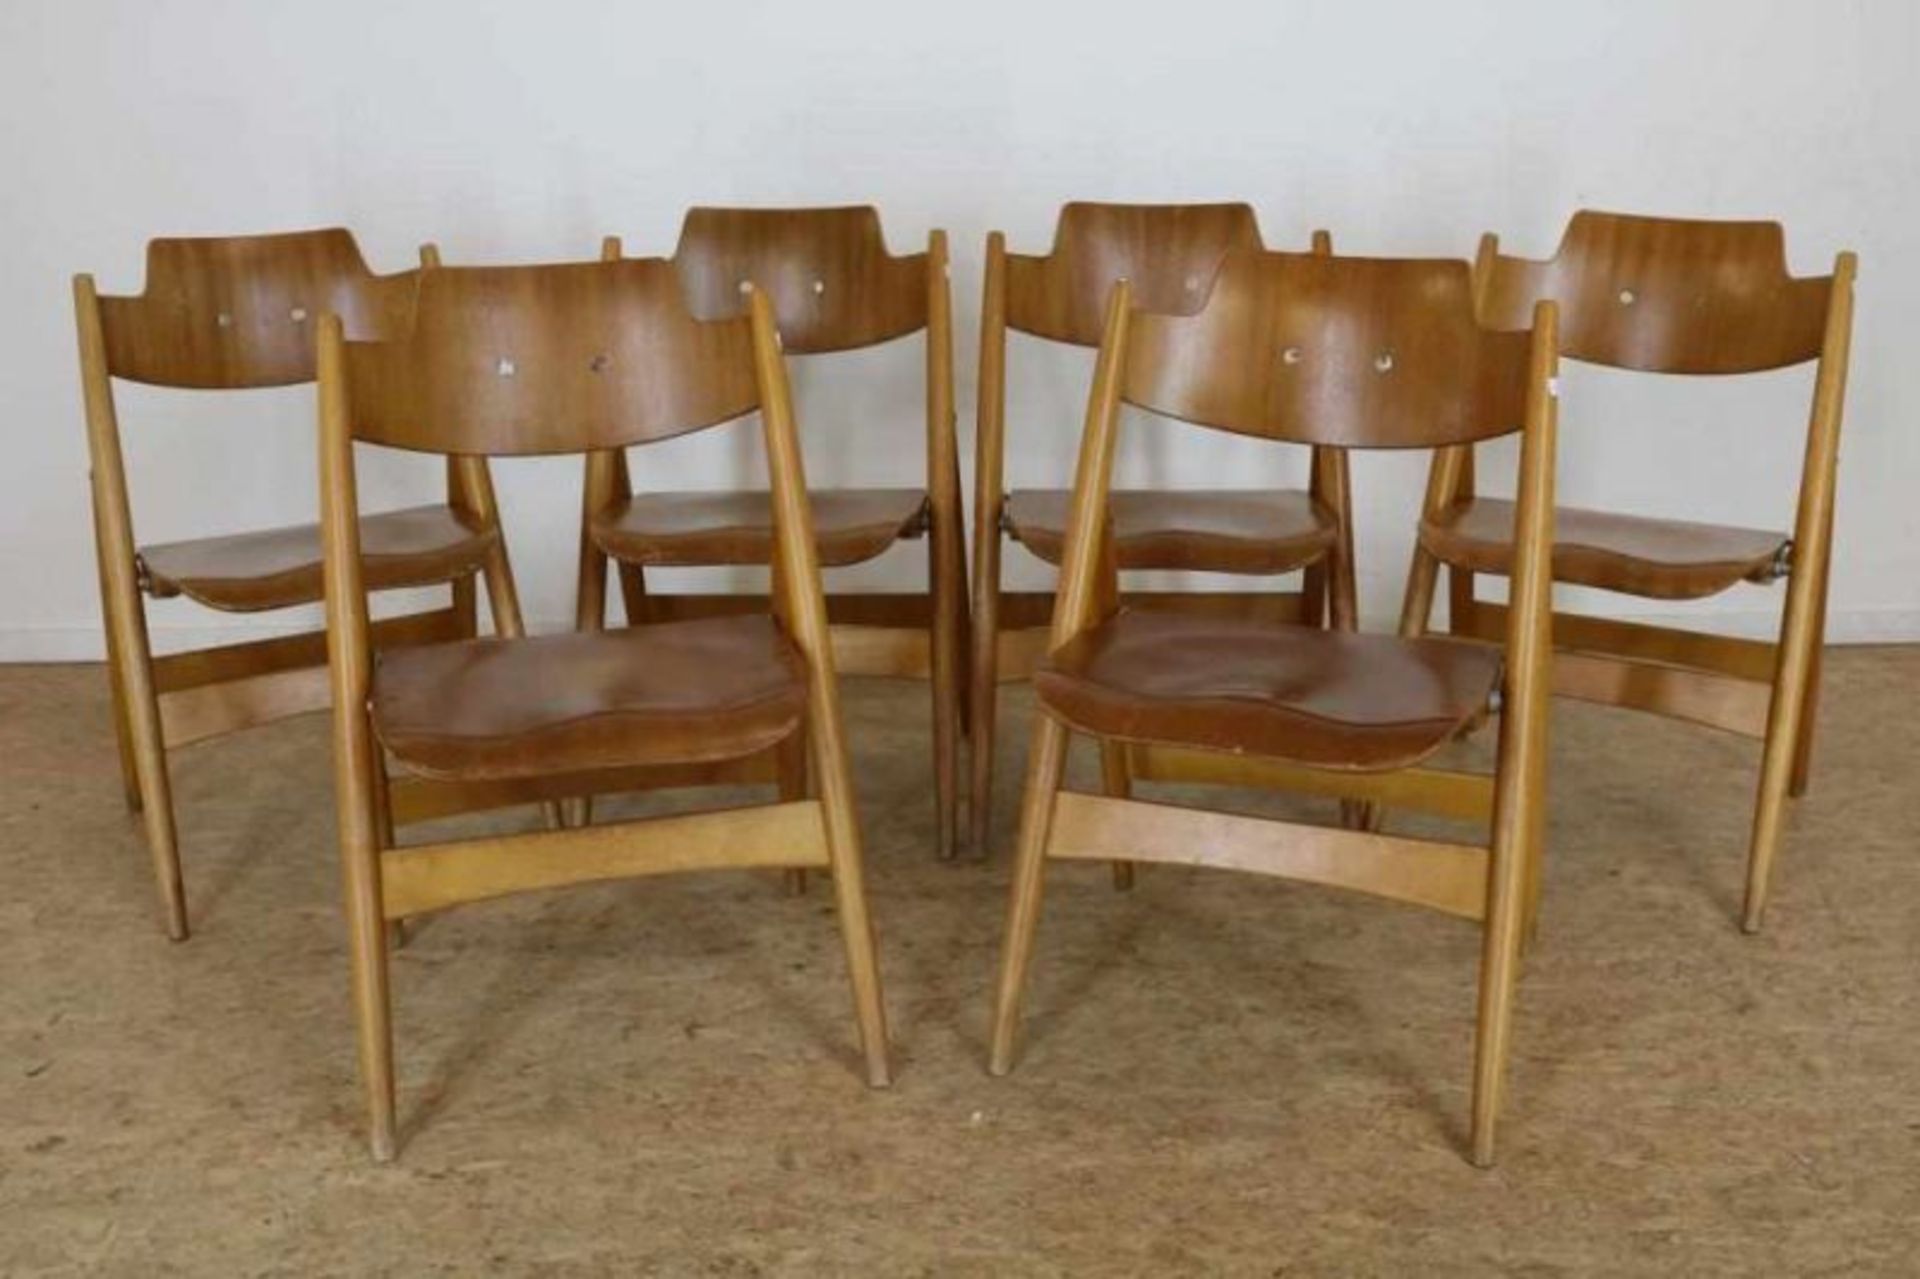 Lot van 6 houten klapstoelen, ontwerp SE-18 uit 1952 van Egon Eiermann (1904-1970) Lot of 6 wooden